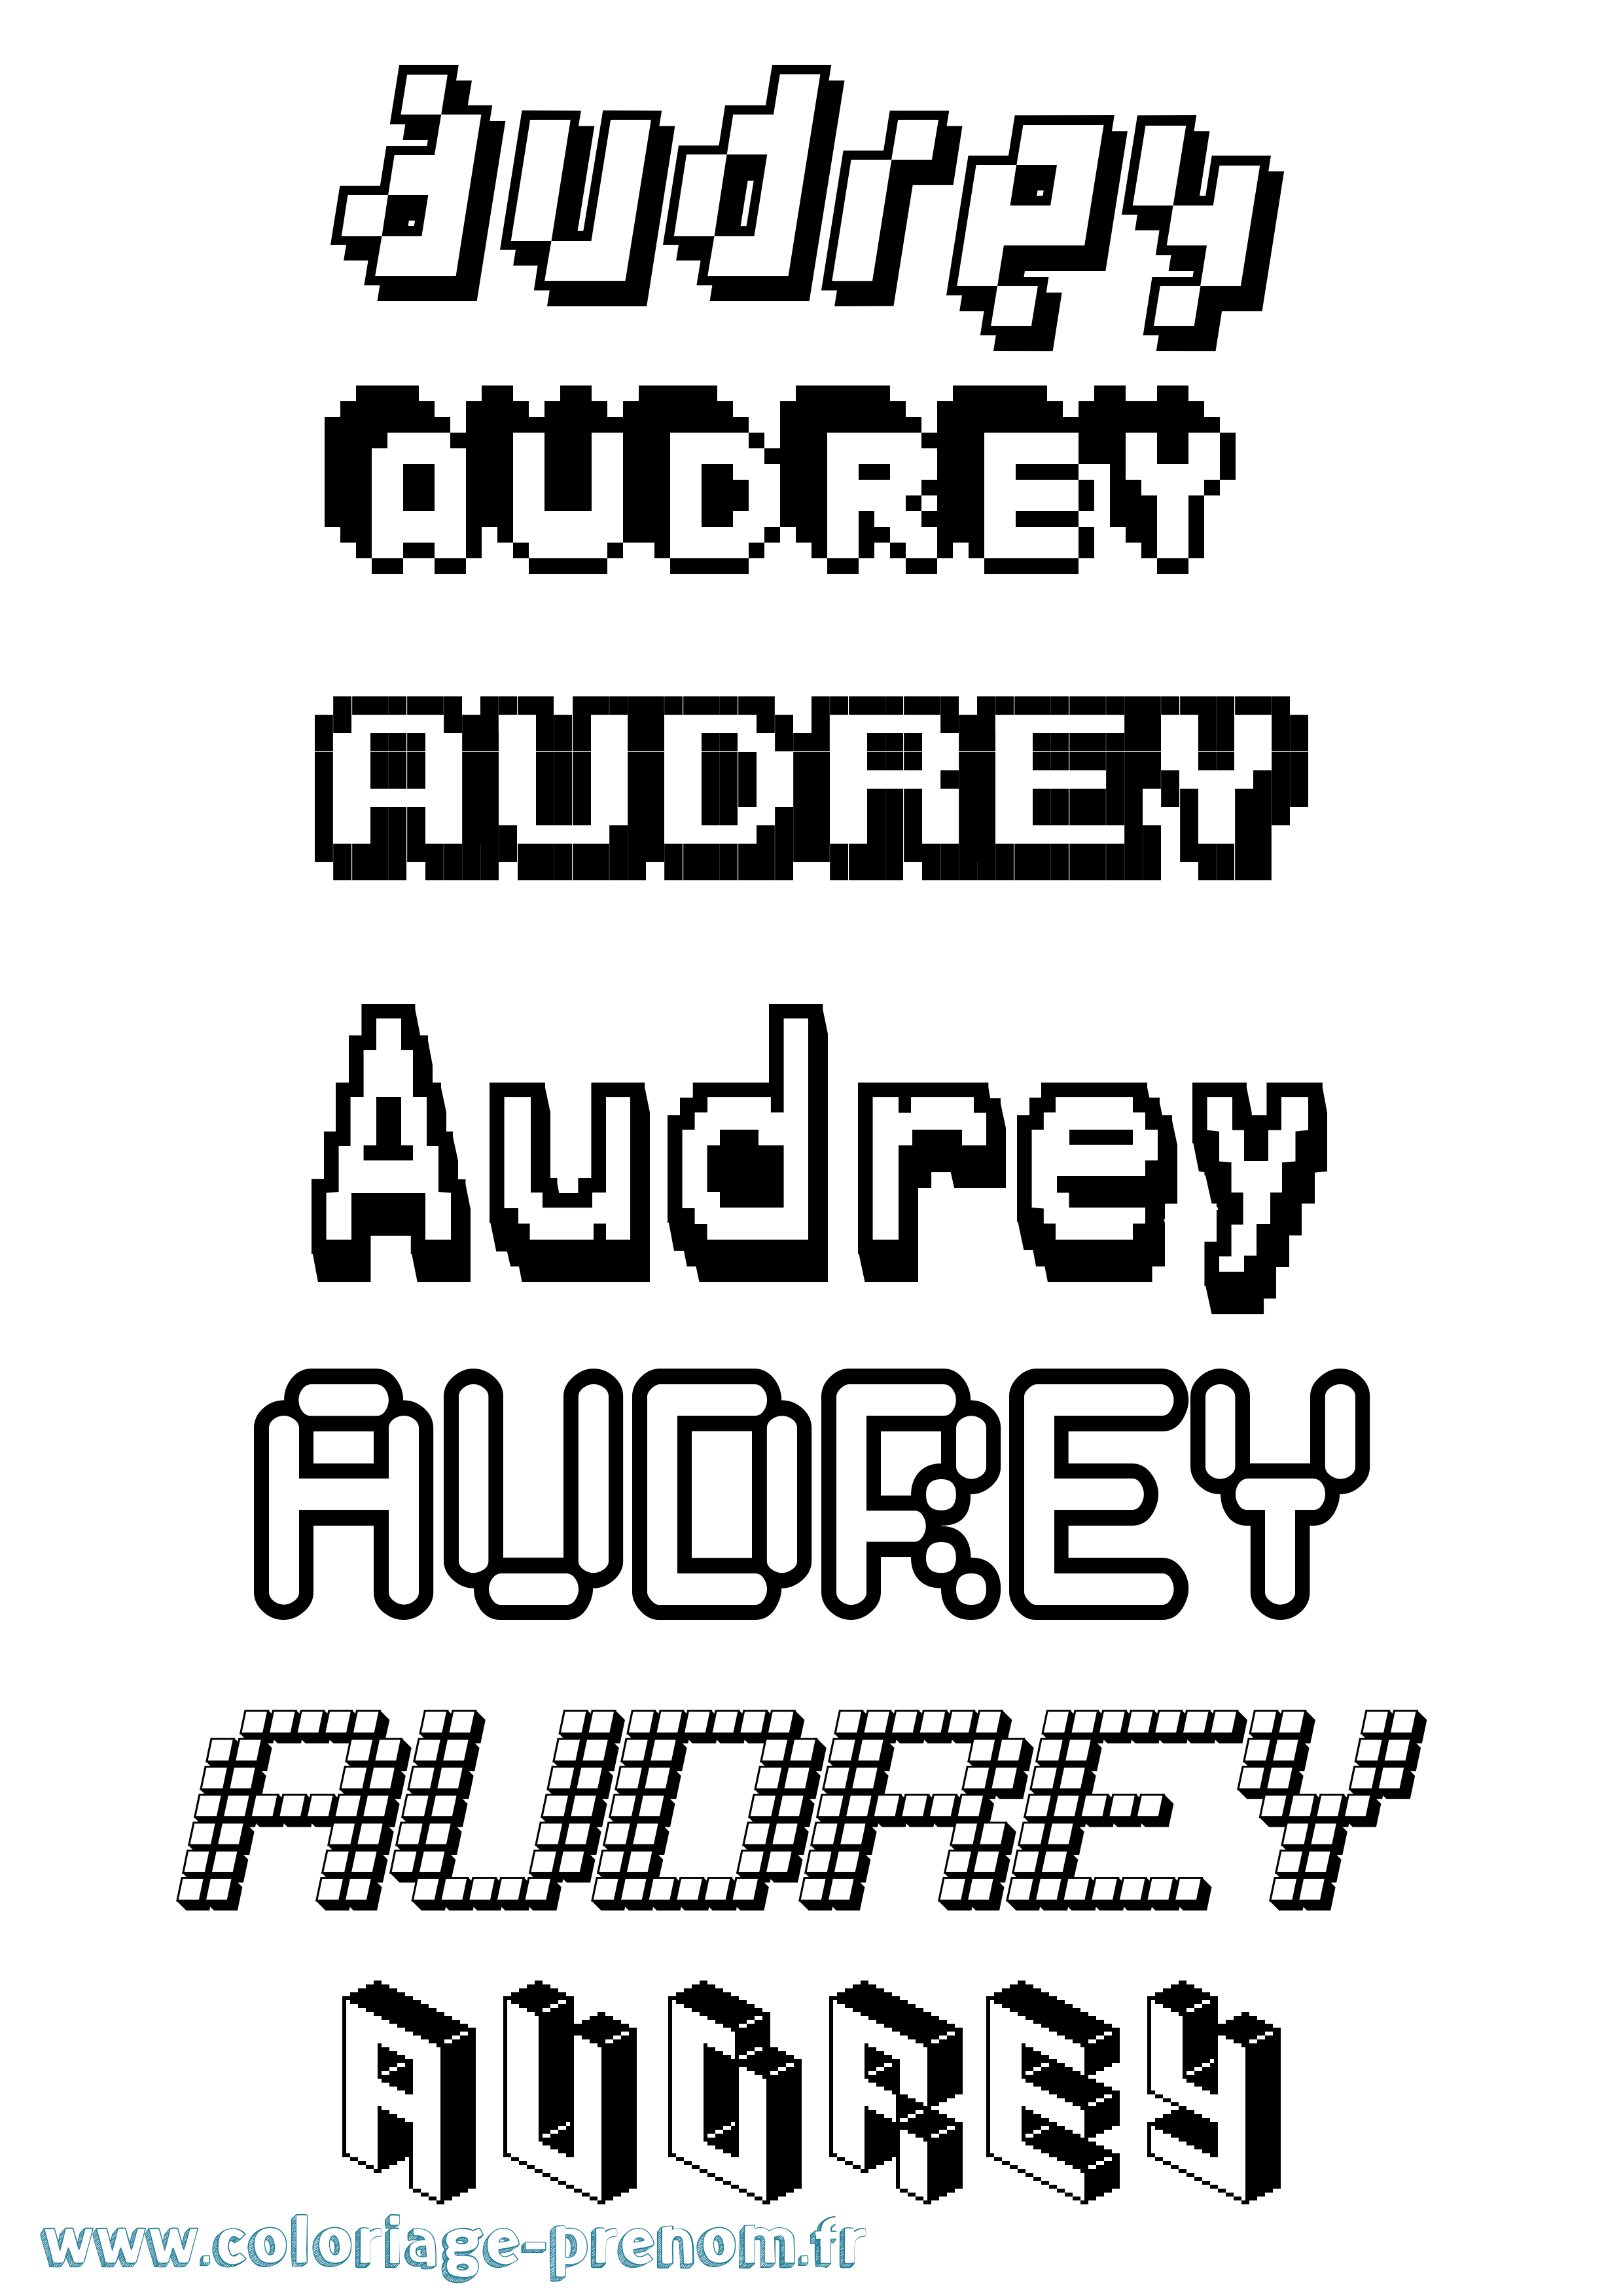 Coloriage prénom Audrey Pixel